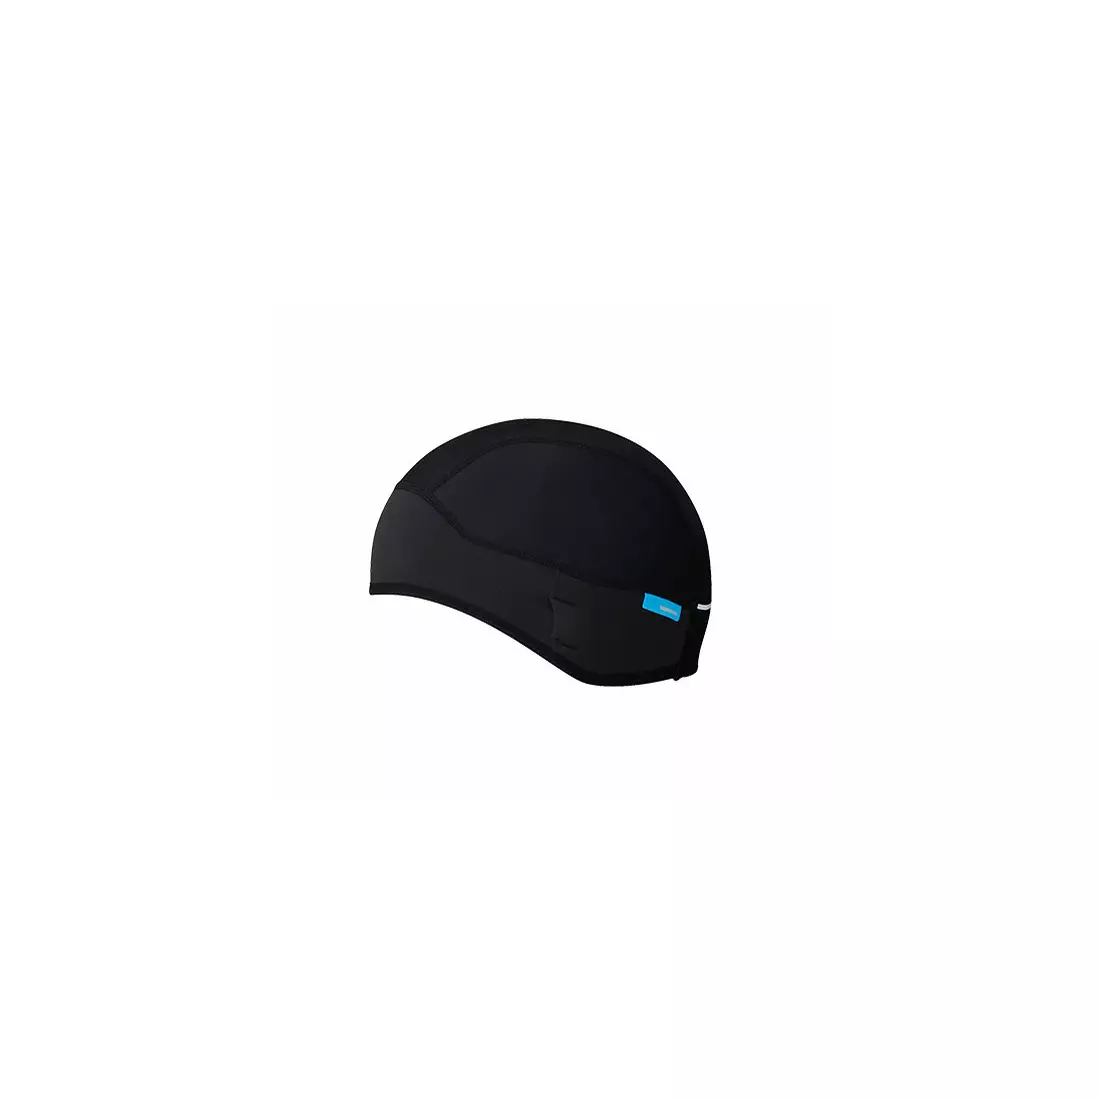 SHIMANO AW17 Windbreak Helmet Cap ECWOABWQS11UL0 Black One Size